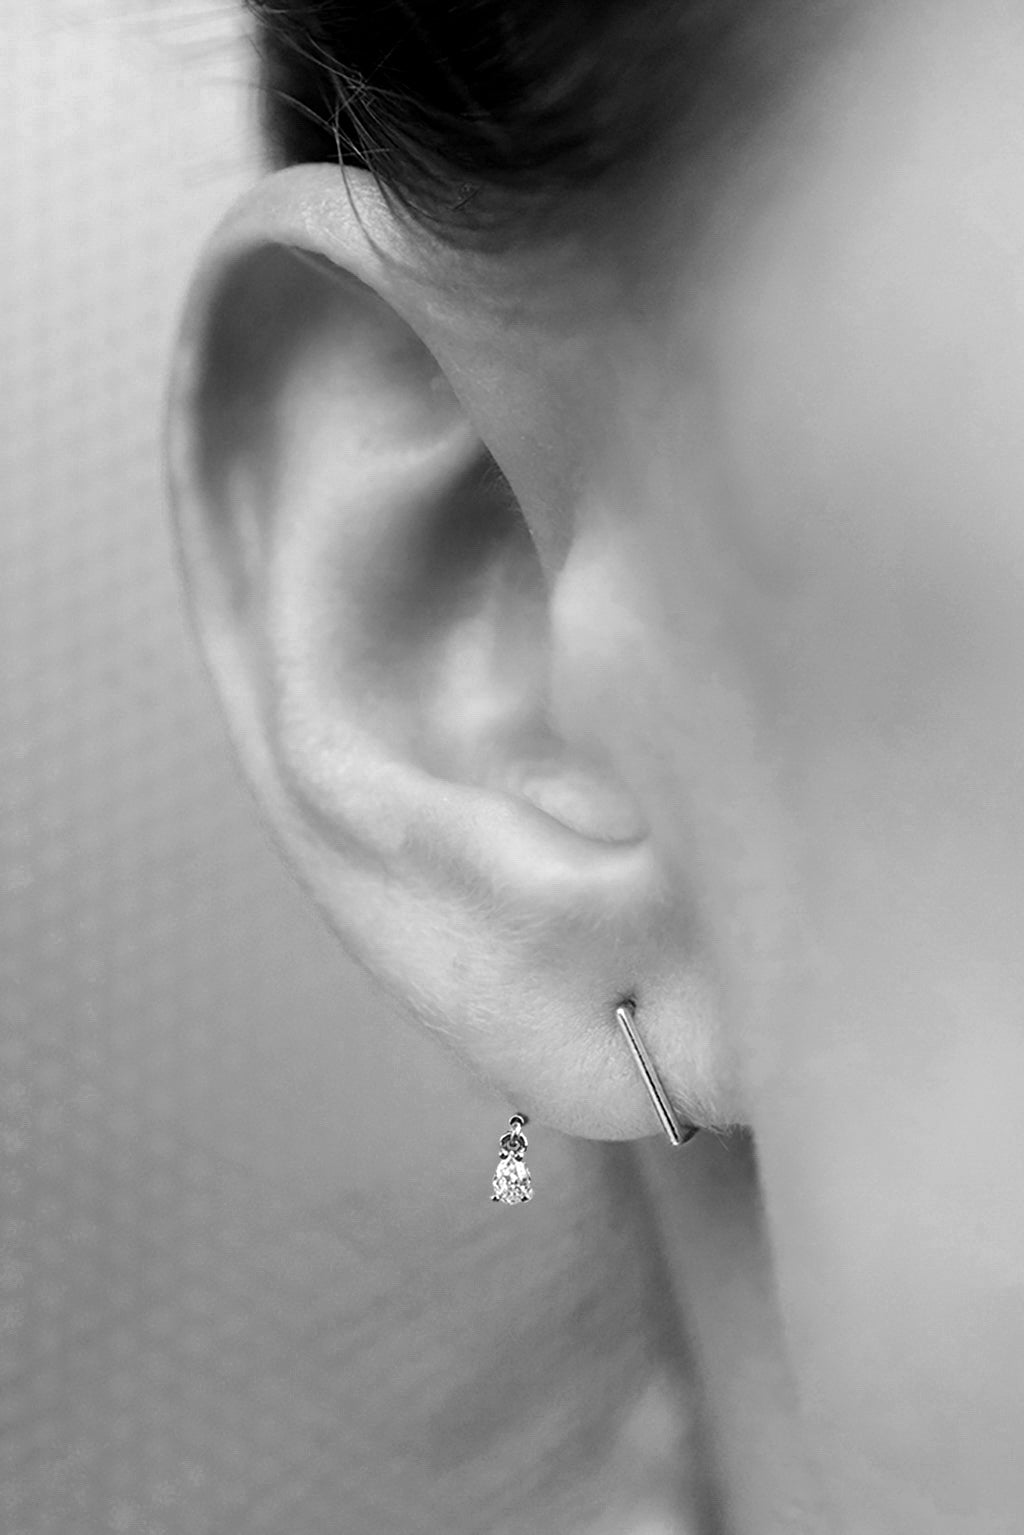 Z Pear diamond gold earring